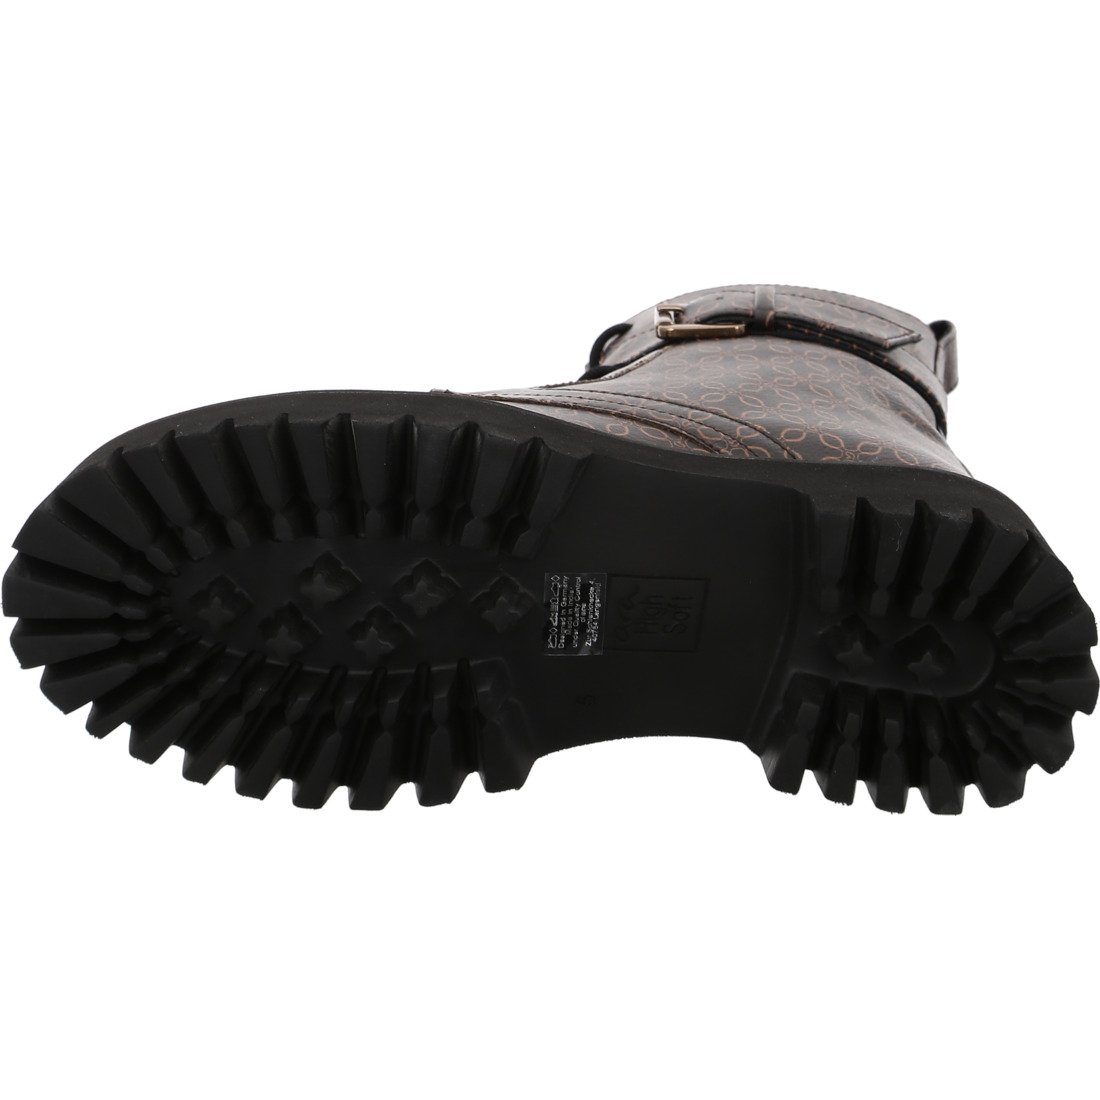 Schuhe, - schwarz Stiefelette Amsterdam Ara Stiefelette Ara 047017 Glattleder